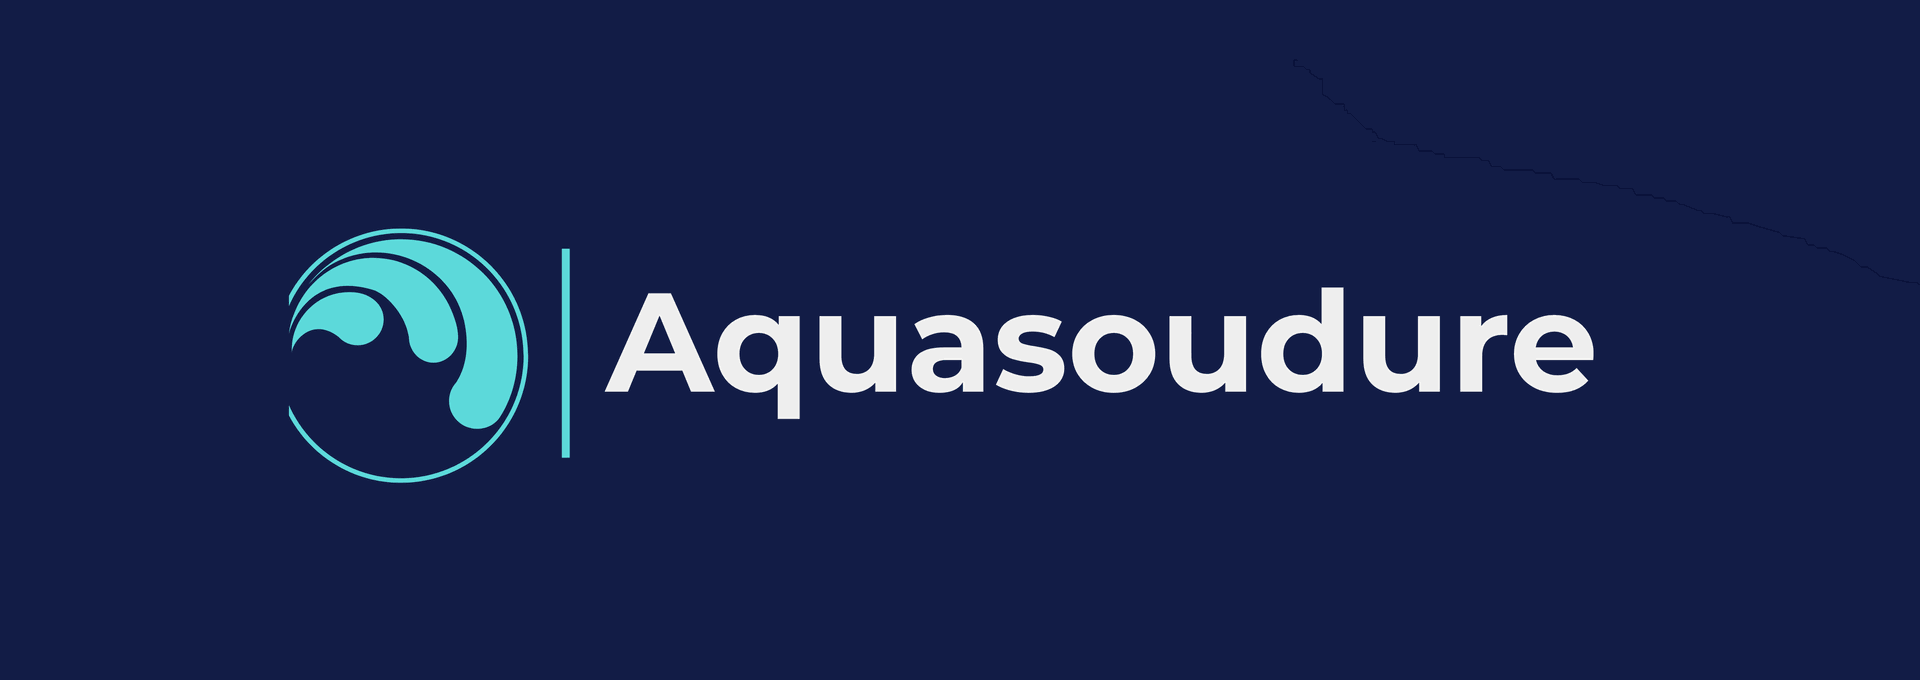 Aquasoudure